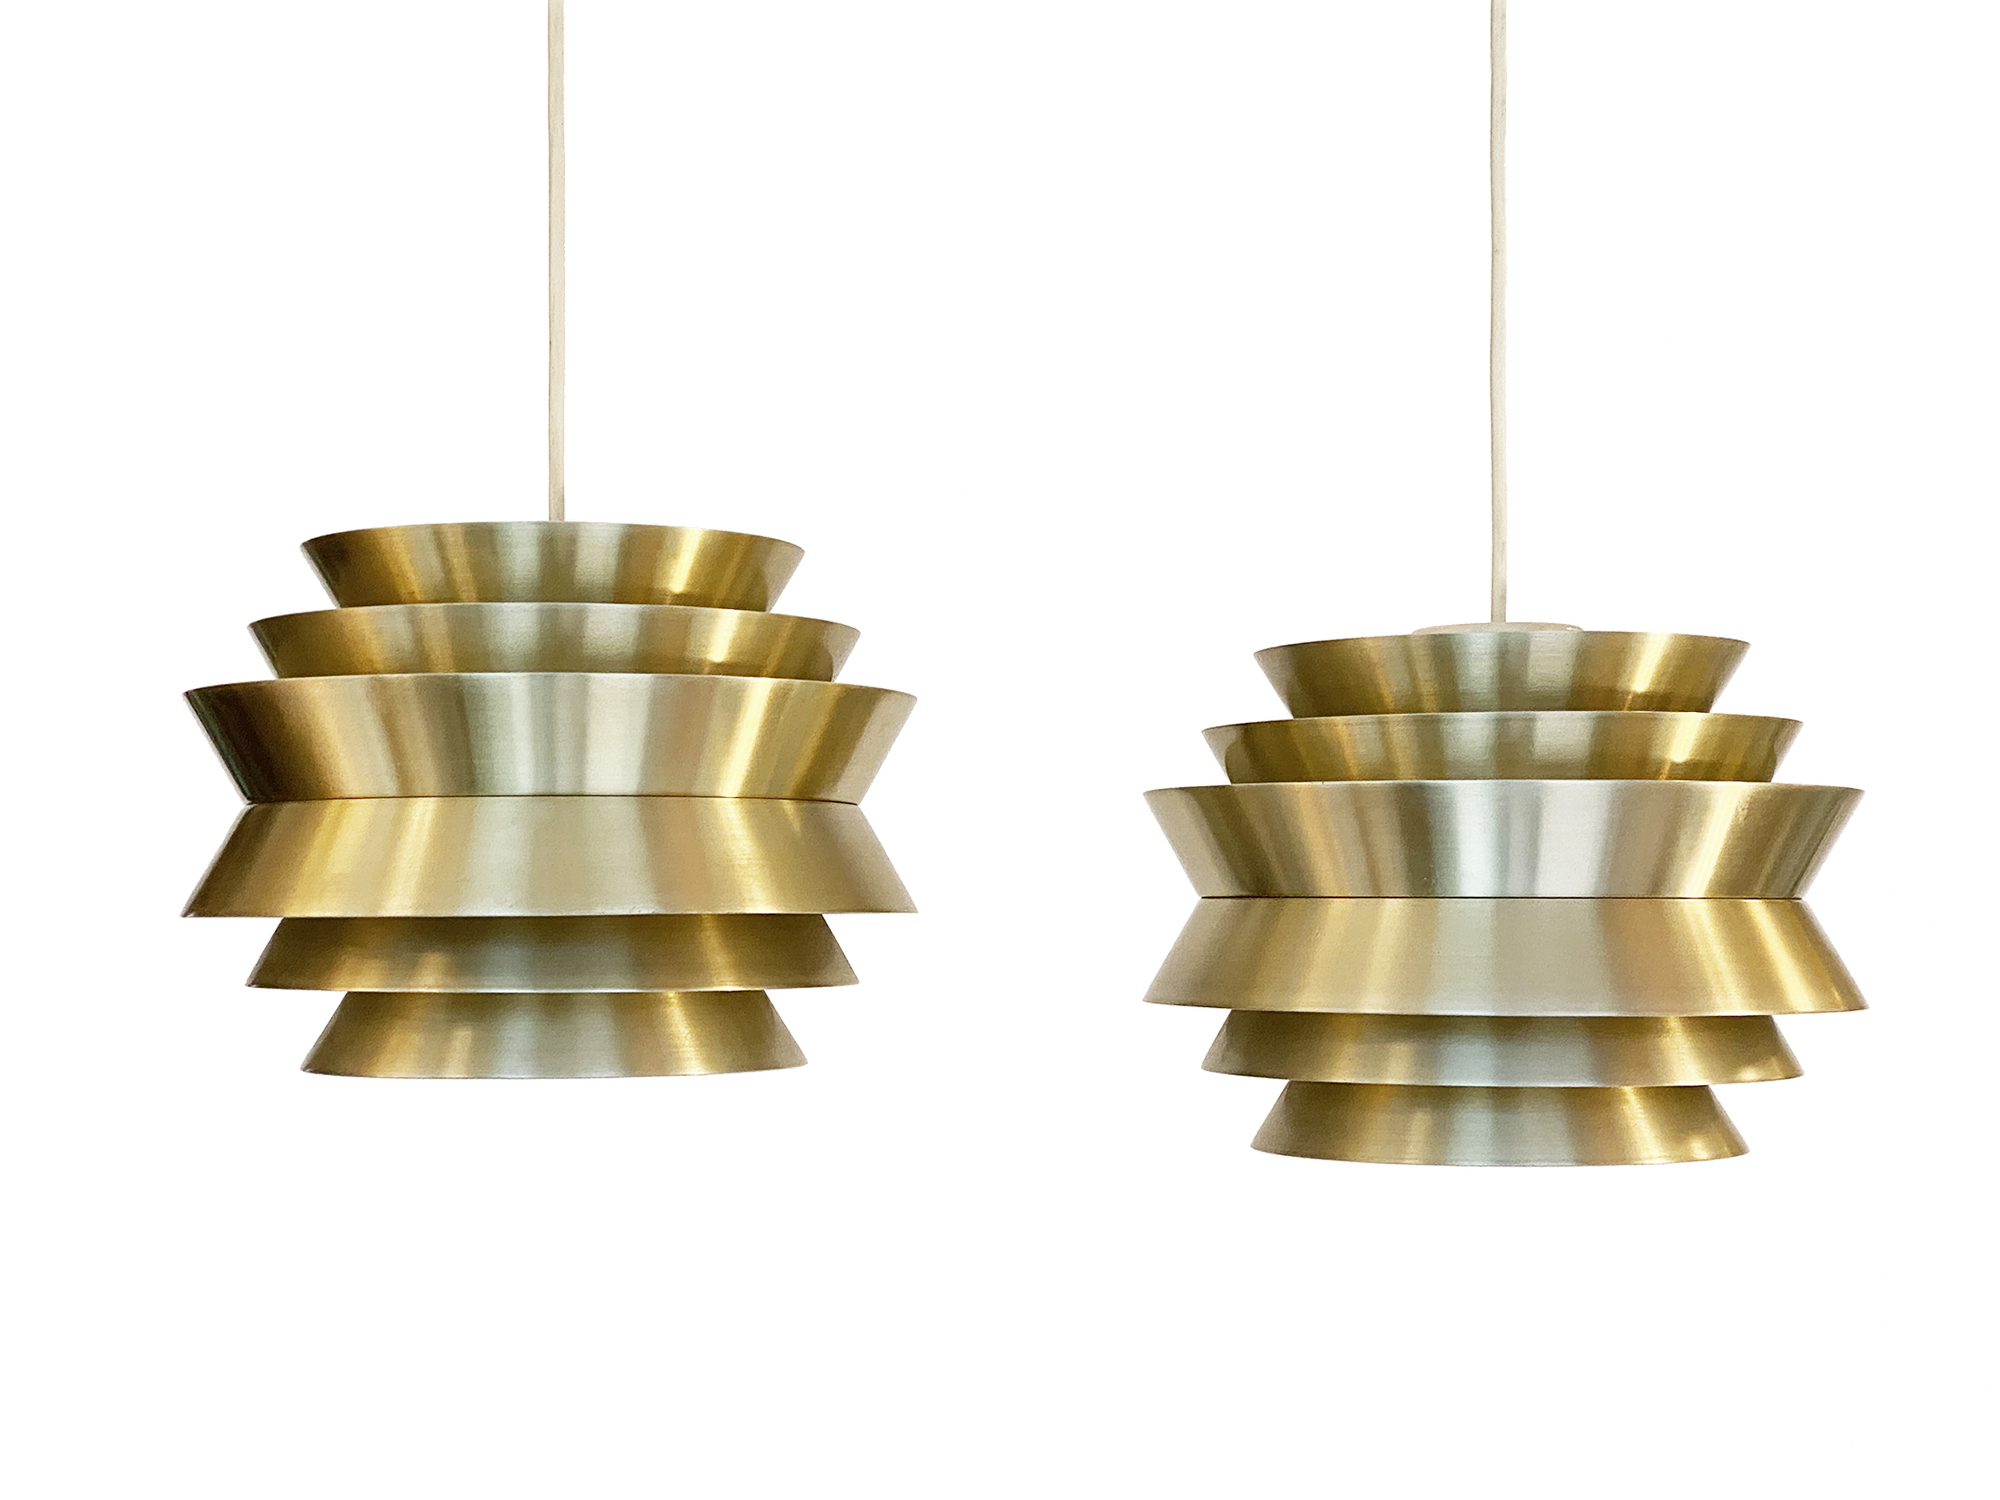 Pair of pendant lights "Trava" in golden aluminium by Carl Thore for Granhaga Metallindustri. Sweden 1960s